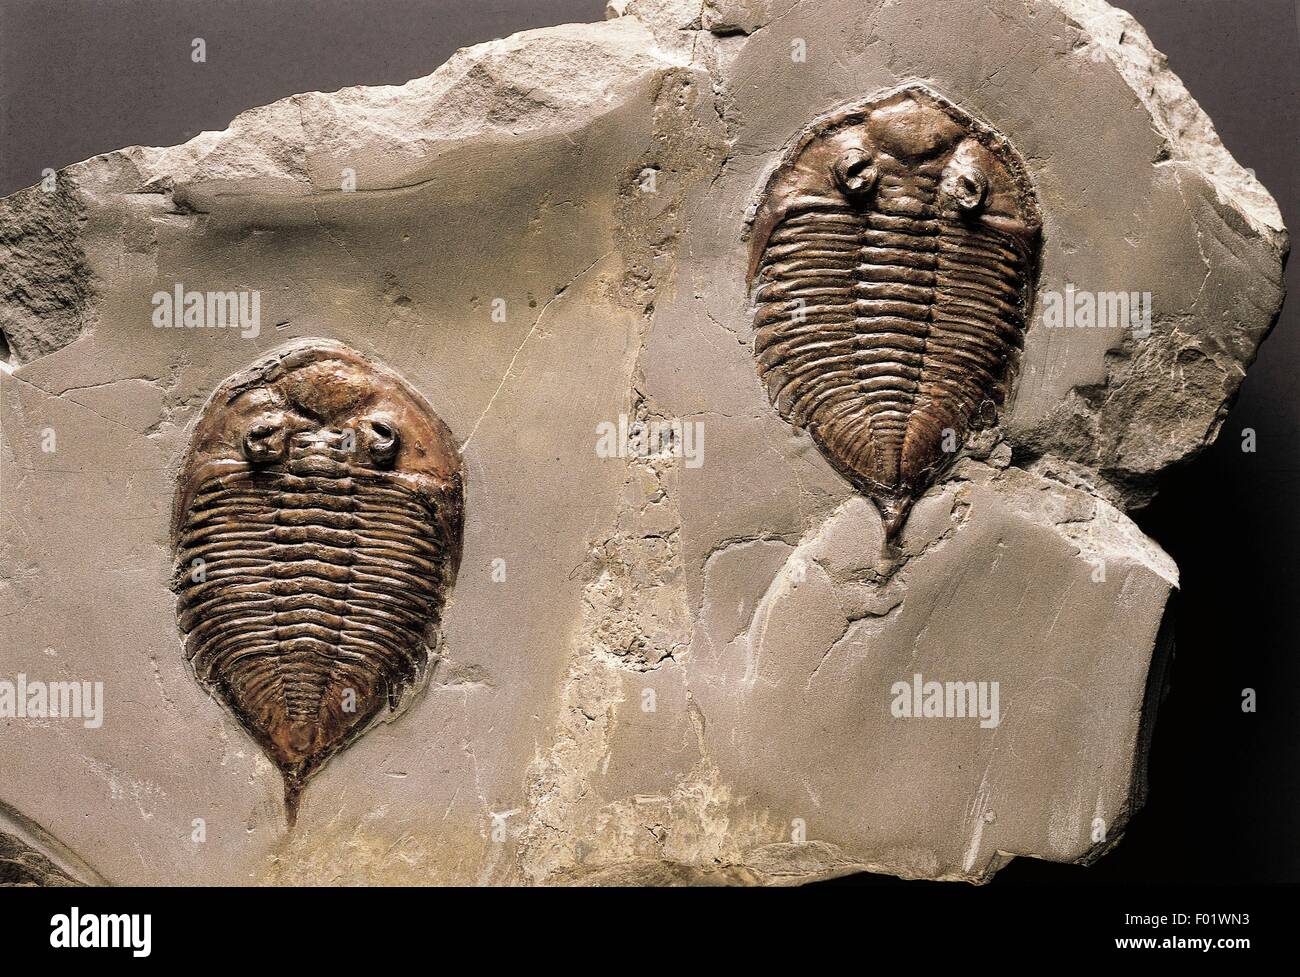 Fossils - Protostomia - Arthropoda - Trilobites - Dalmanites limulurus - Silurian. Stock Photo